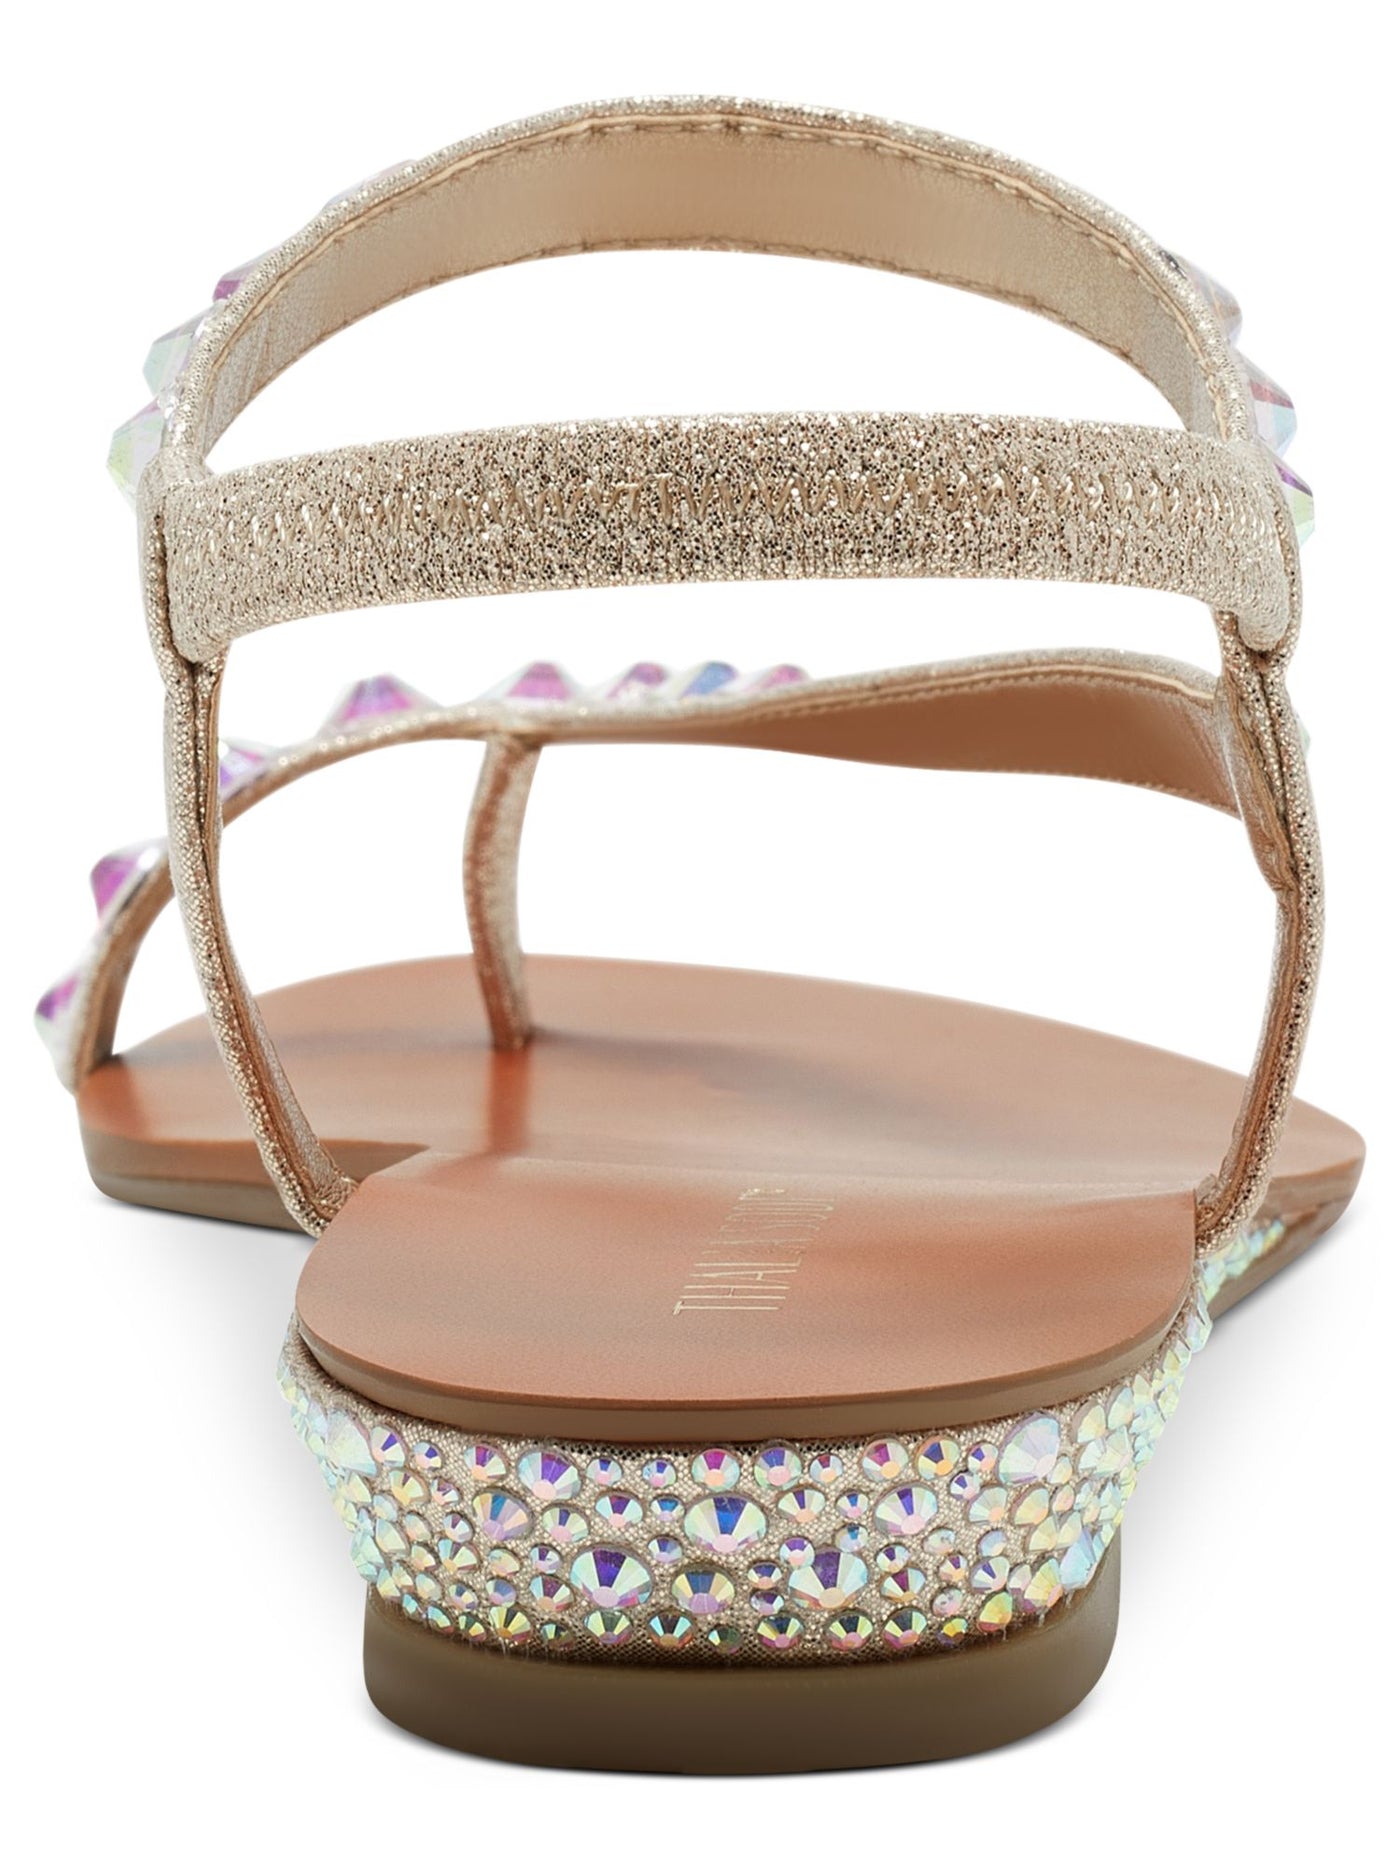 THALIA SODI Womens Beige Colorblock Embellished Izabel Round Toe Wedge Slip On Sandals Shoes 8 M